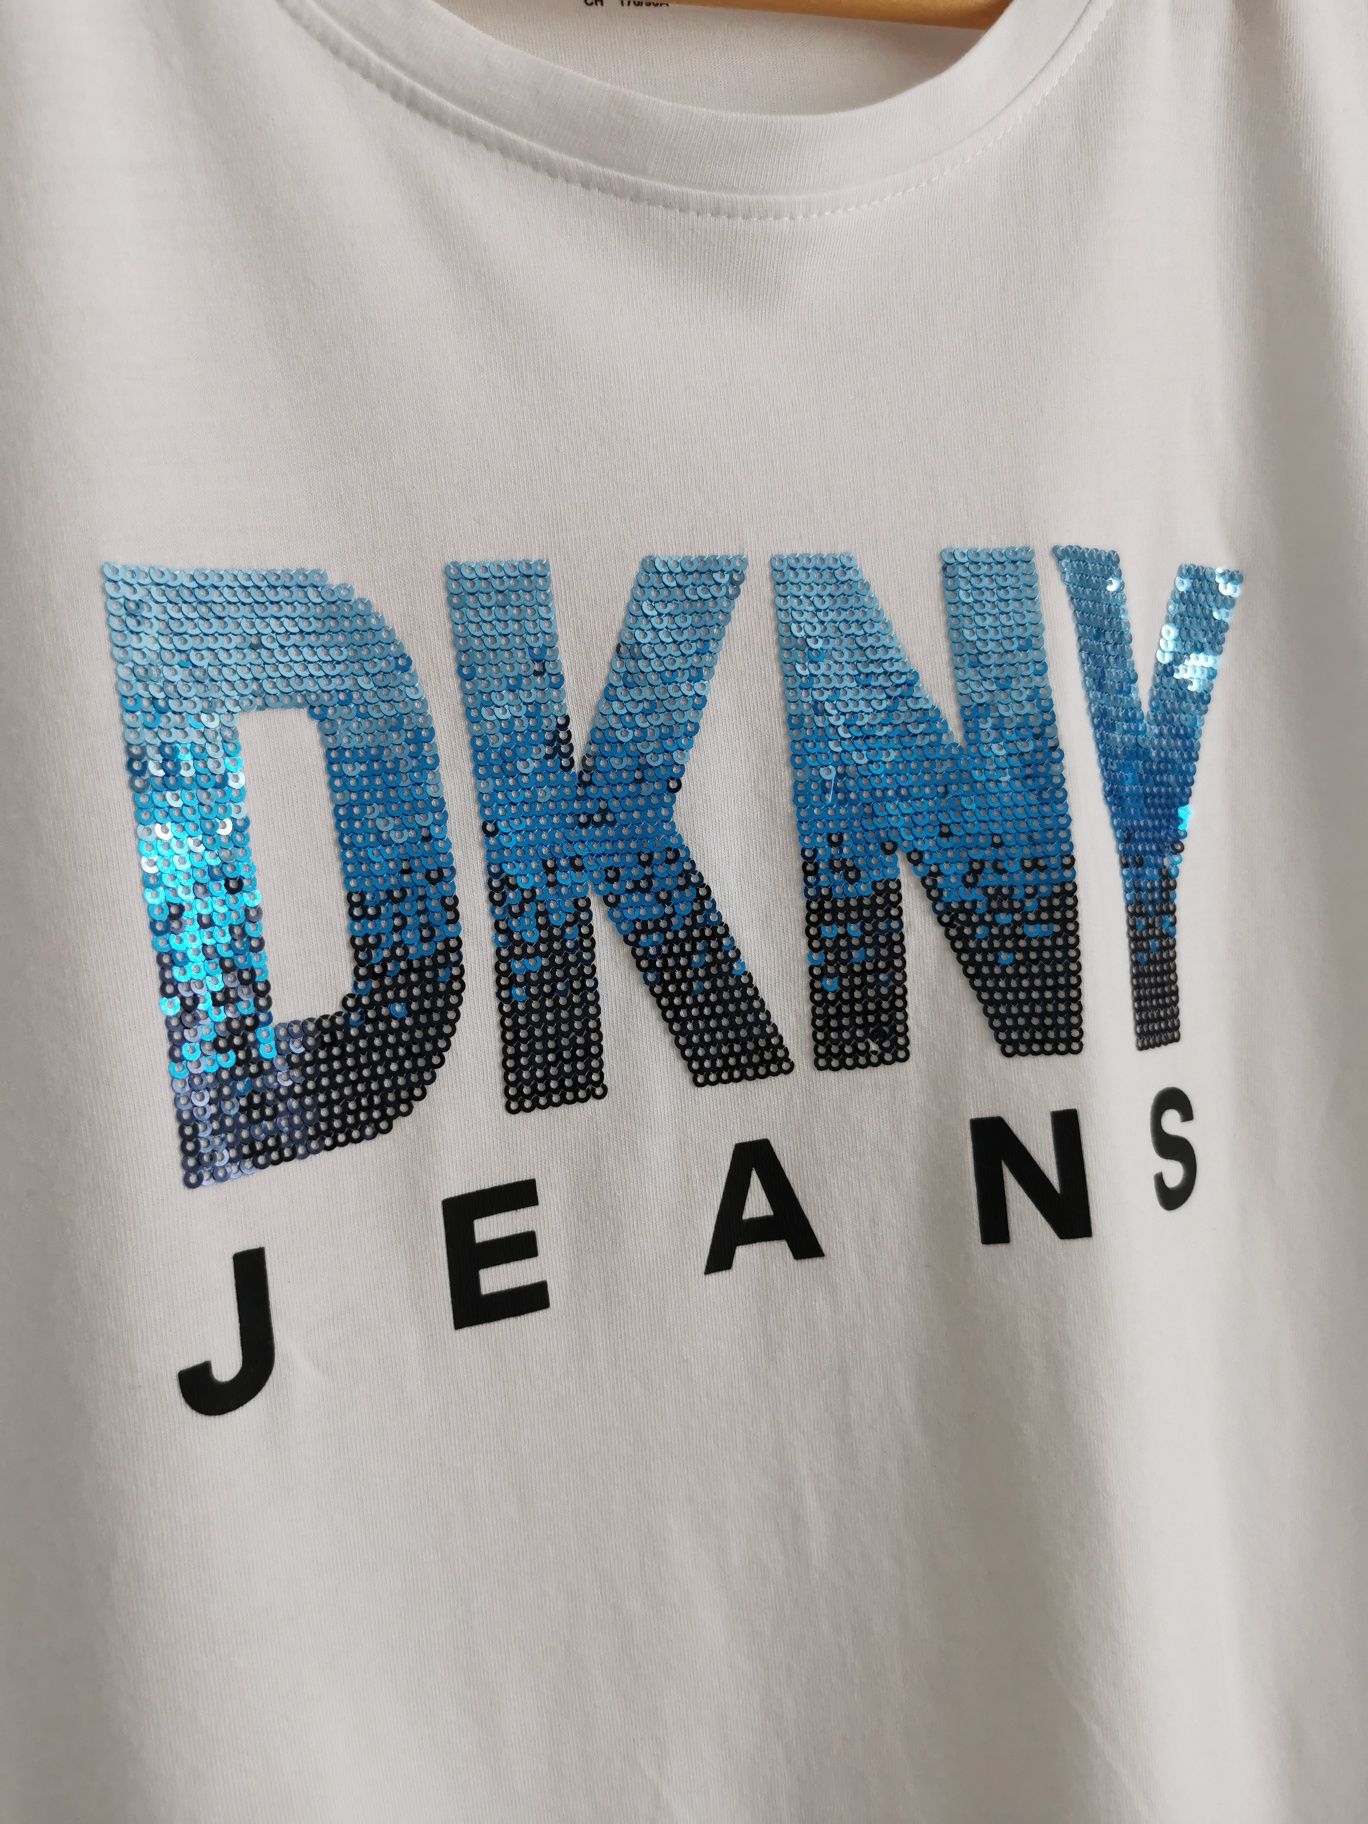 DKNY bluzka koszulka sportowa krótki rękaw damska L/XL